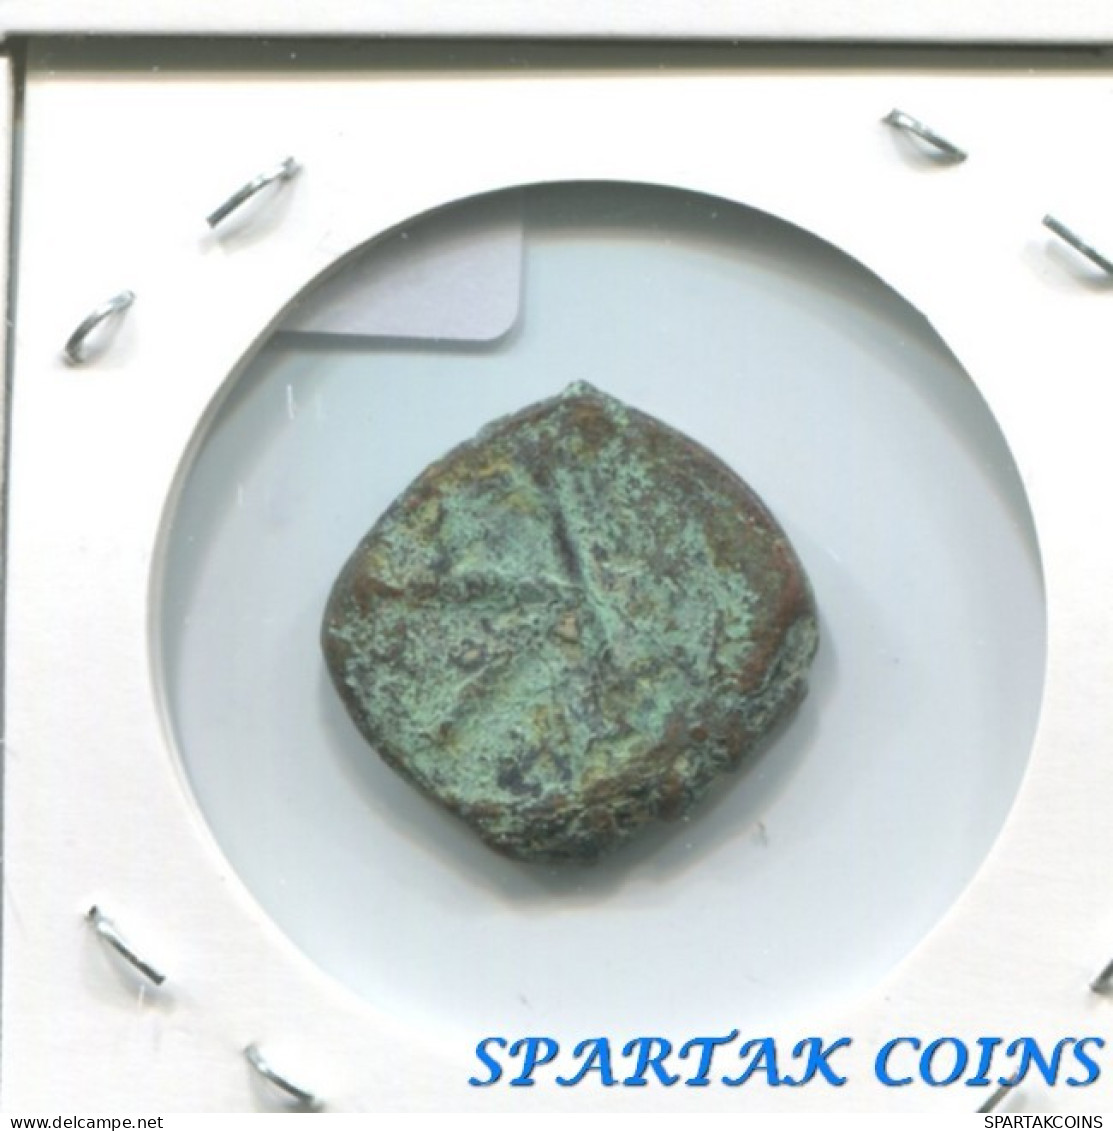 BYZANTINISCHE Münze  EMPIRE Antike Authentisch Münze #E19830.4.D.A - Byzantinische Münzen